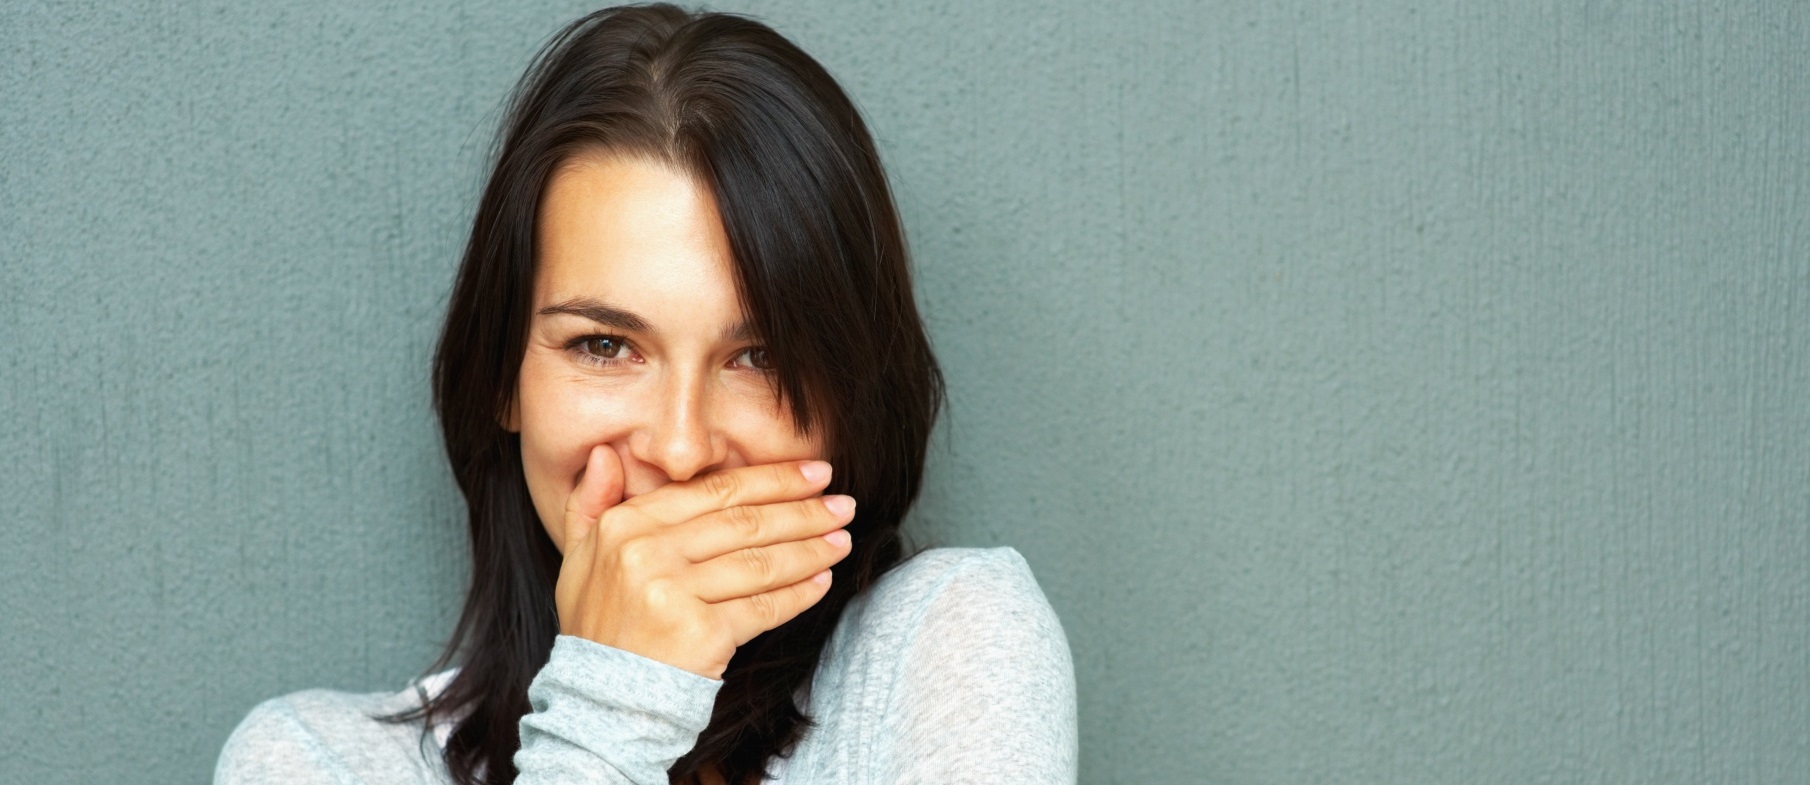 Как удалить сигаретный запах изо рта